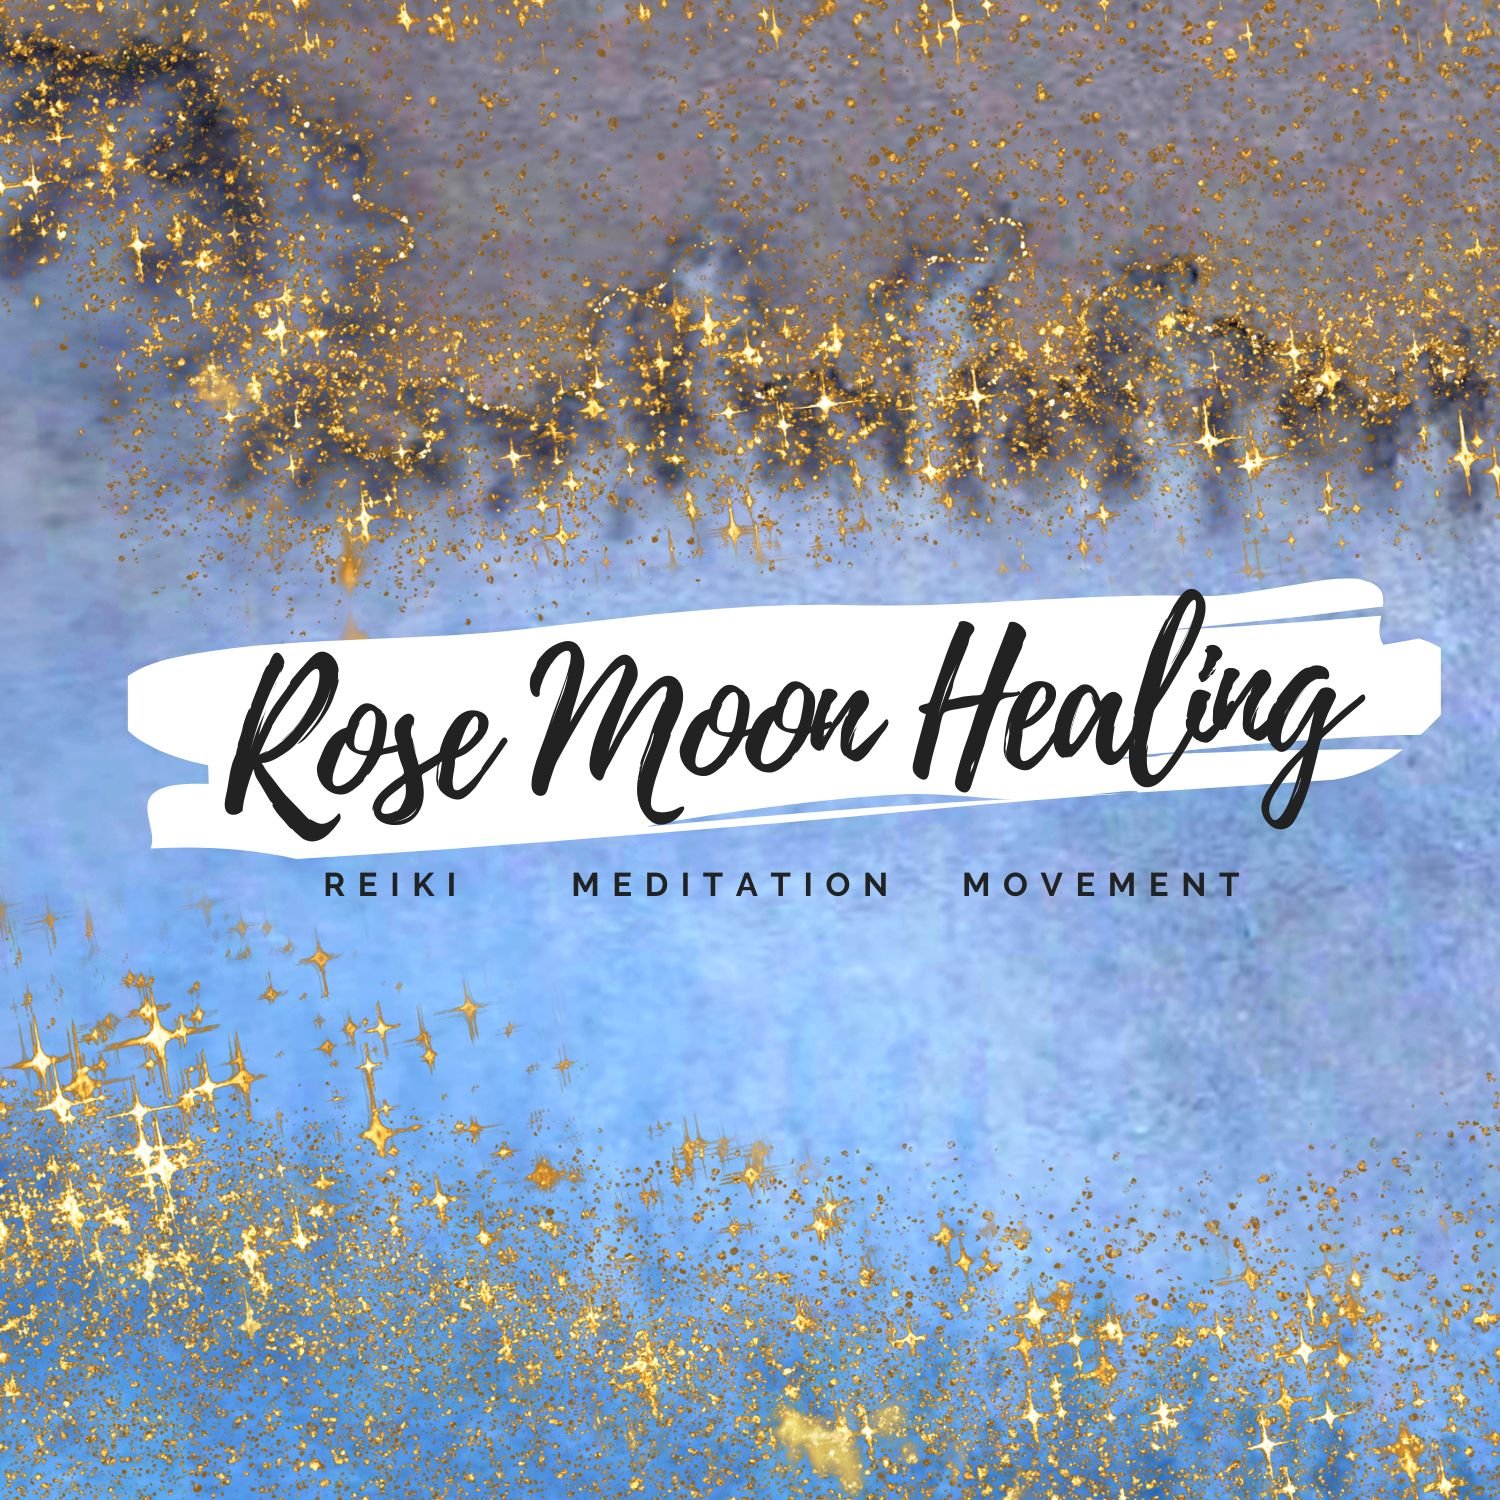 Rose Moon Healing